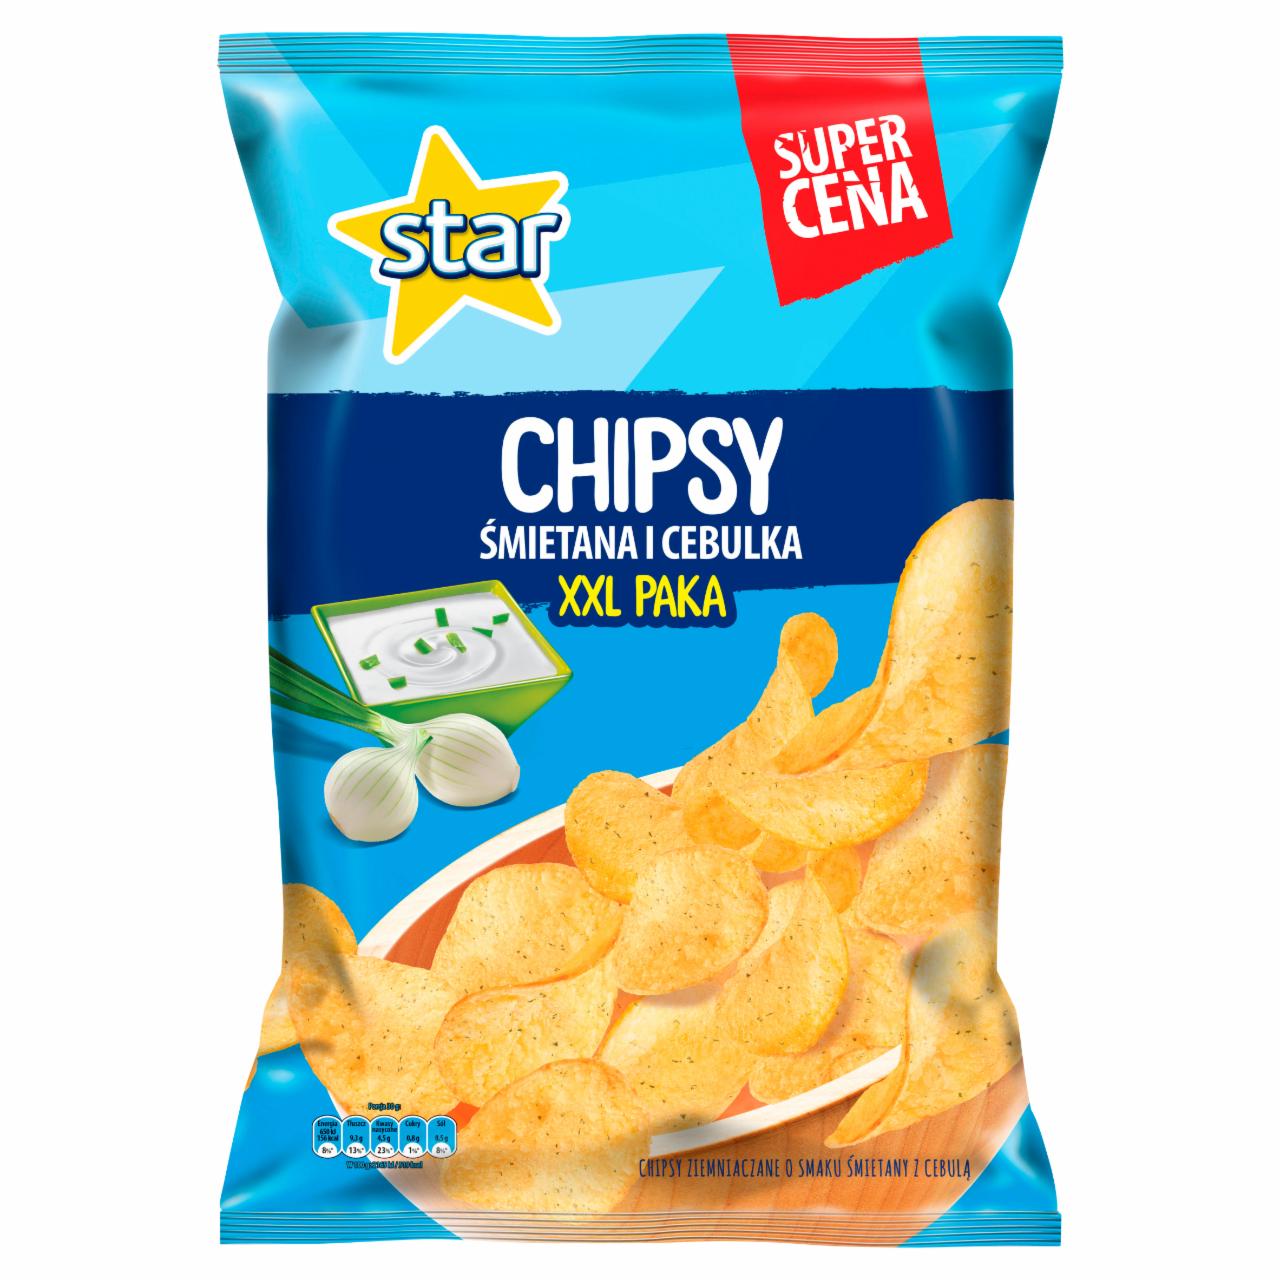 Zdjęcia - Star Śmietana i cebulka Chipsy ziemniaczane 250 g